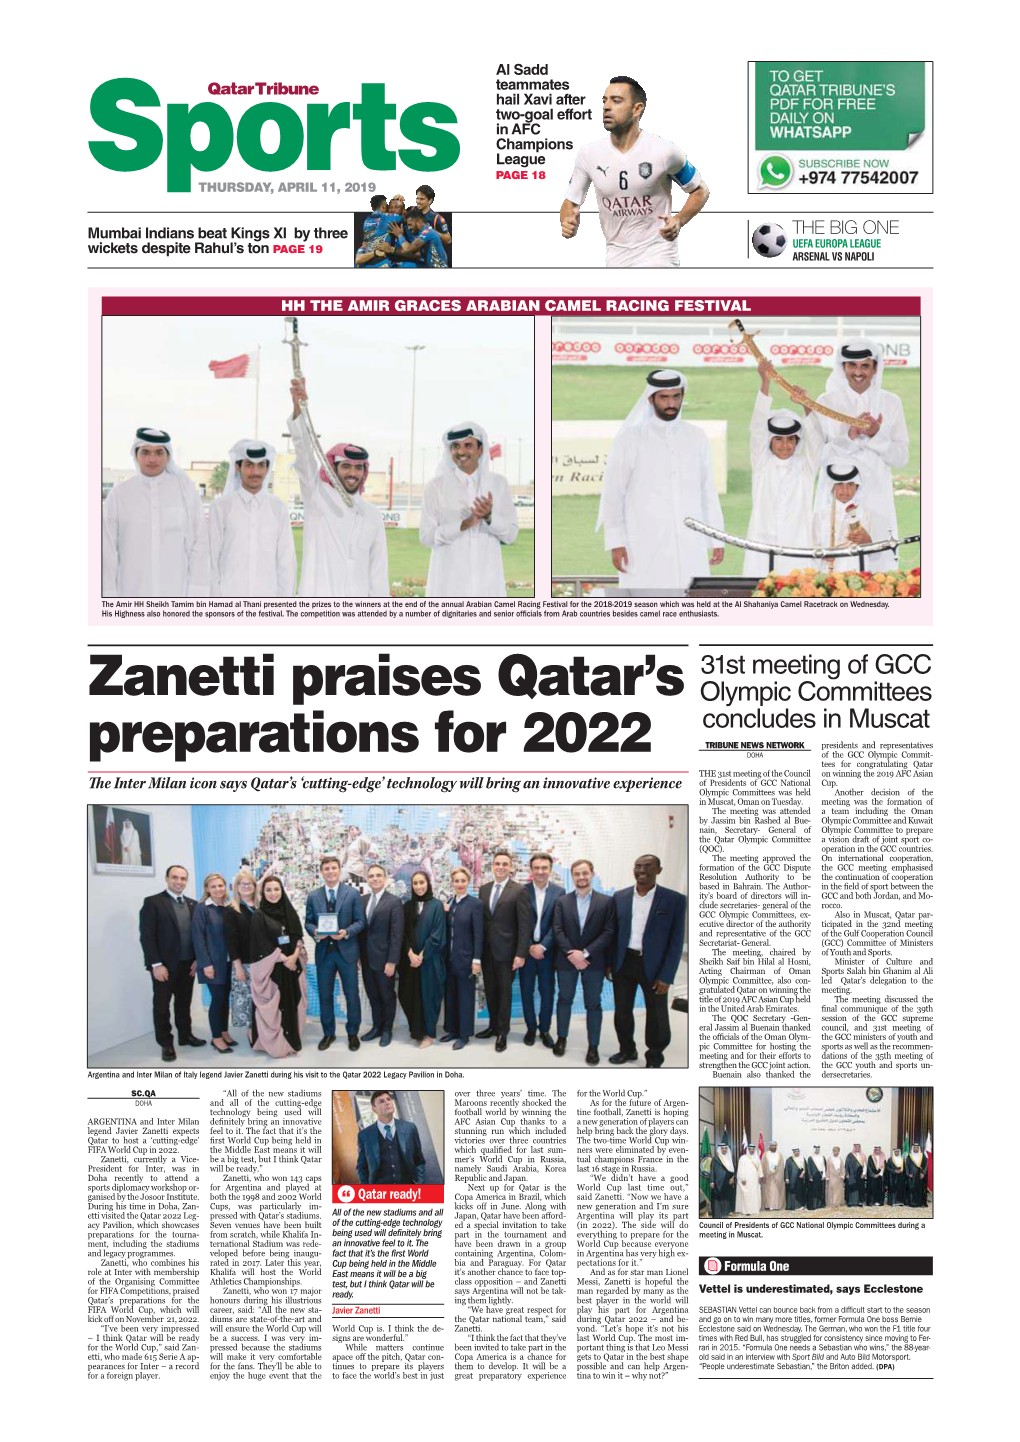 Zanetti Praises Qatar's Preparations for 2022